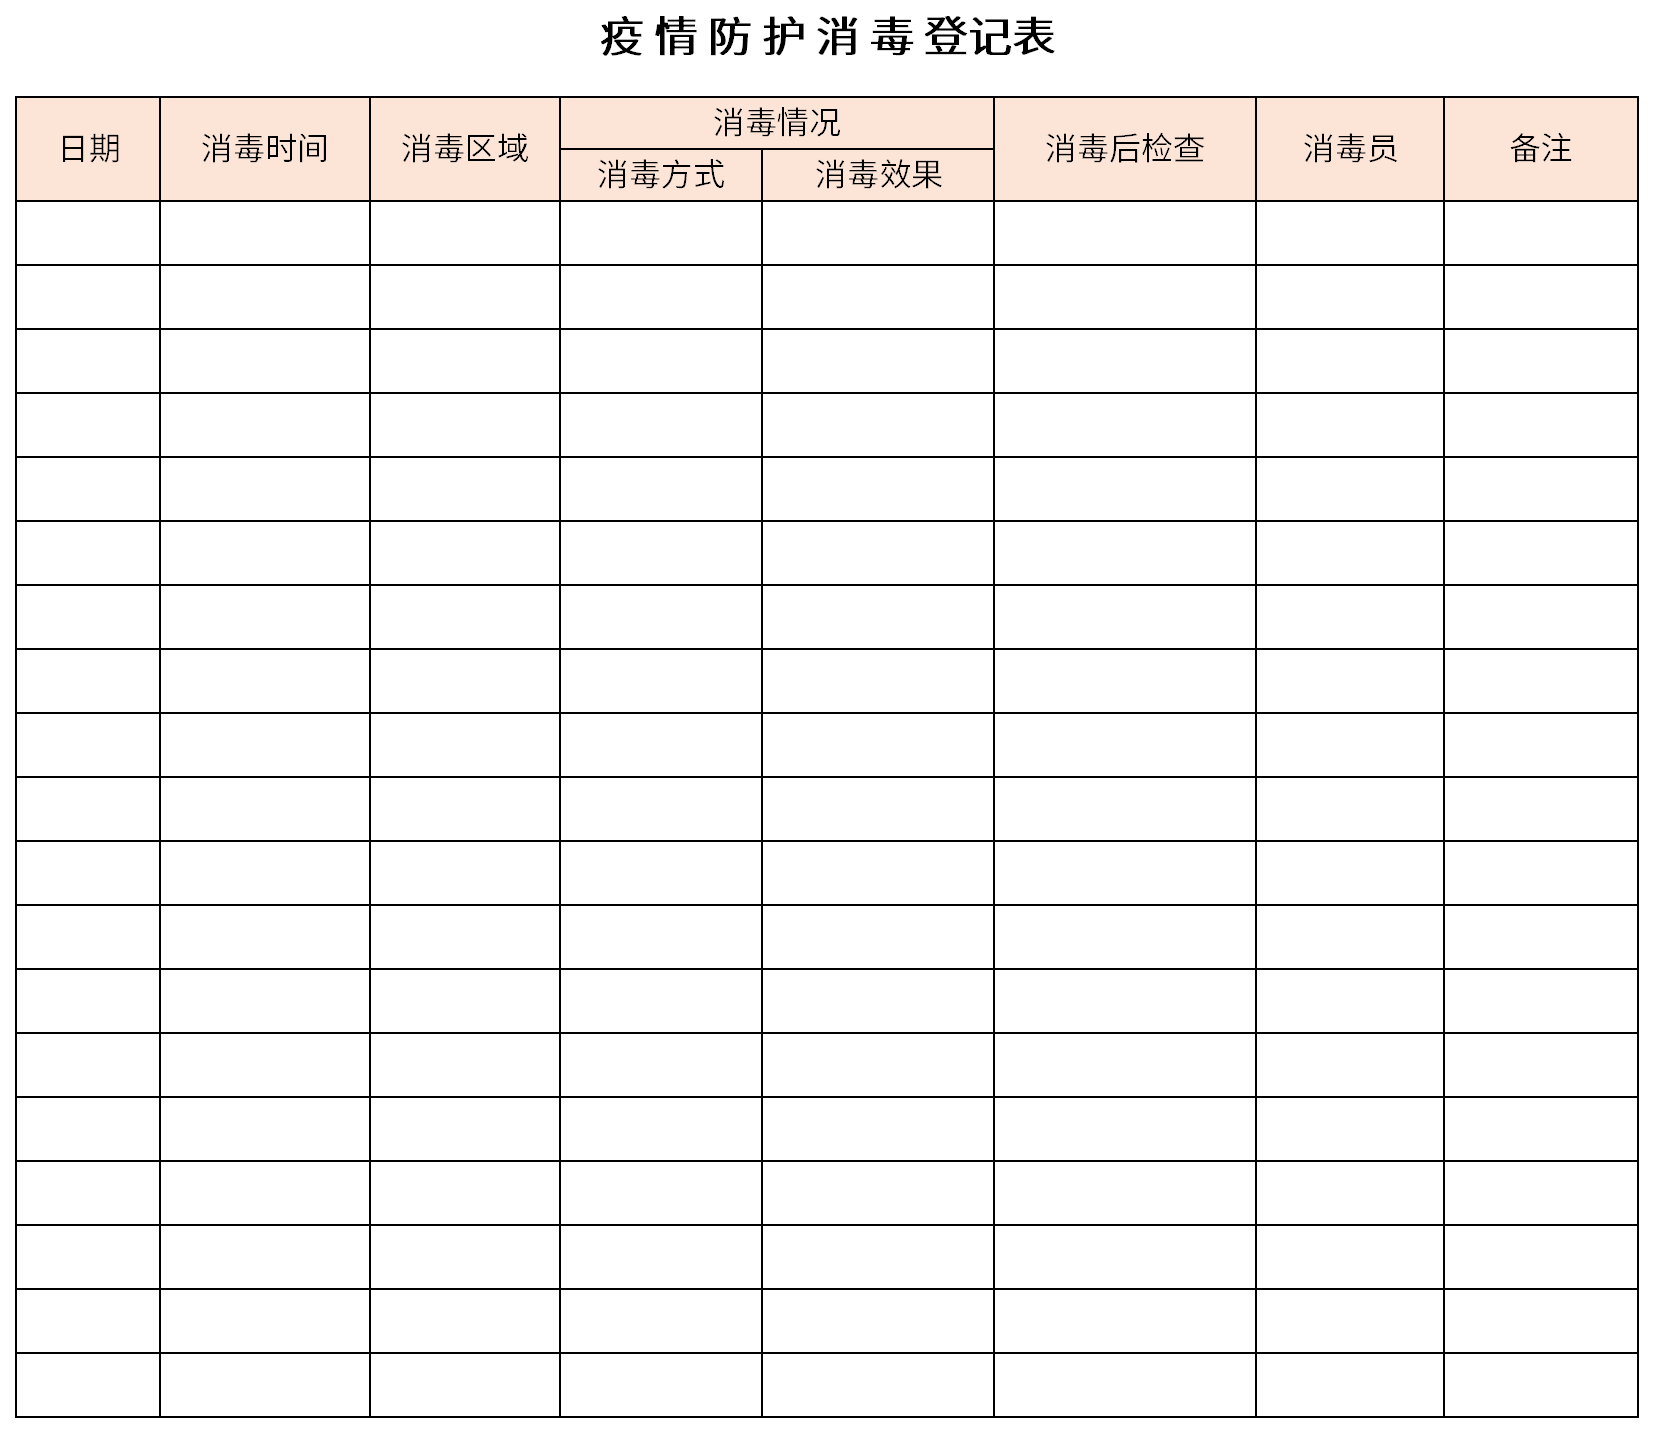 疫情防护消毒登记表表格免费下载请关注华军软件园